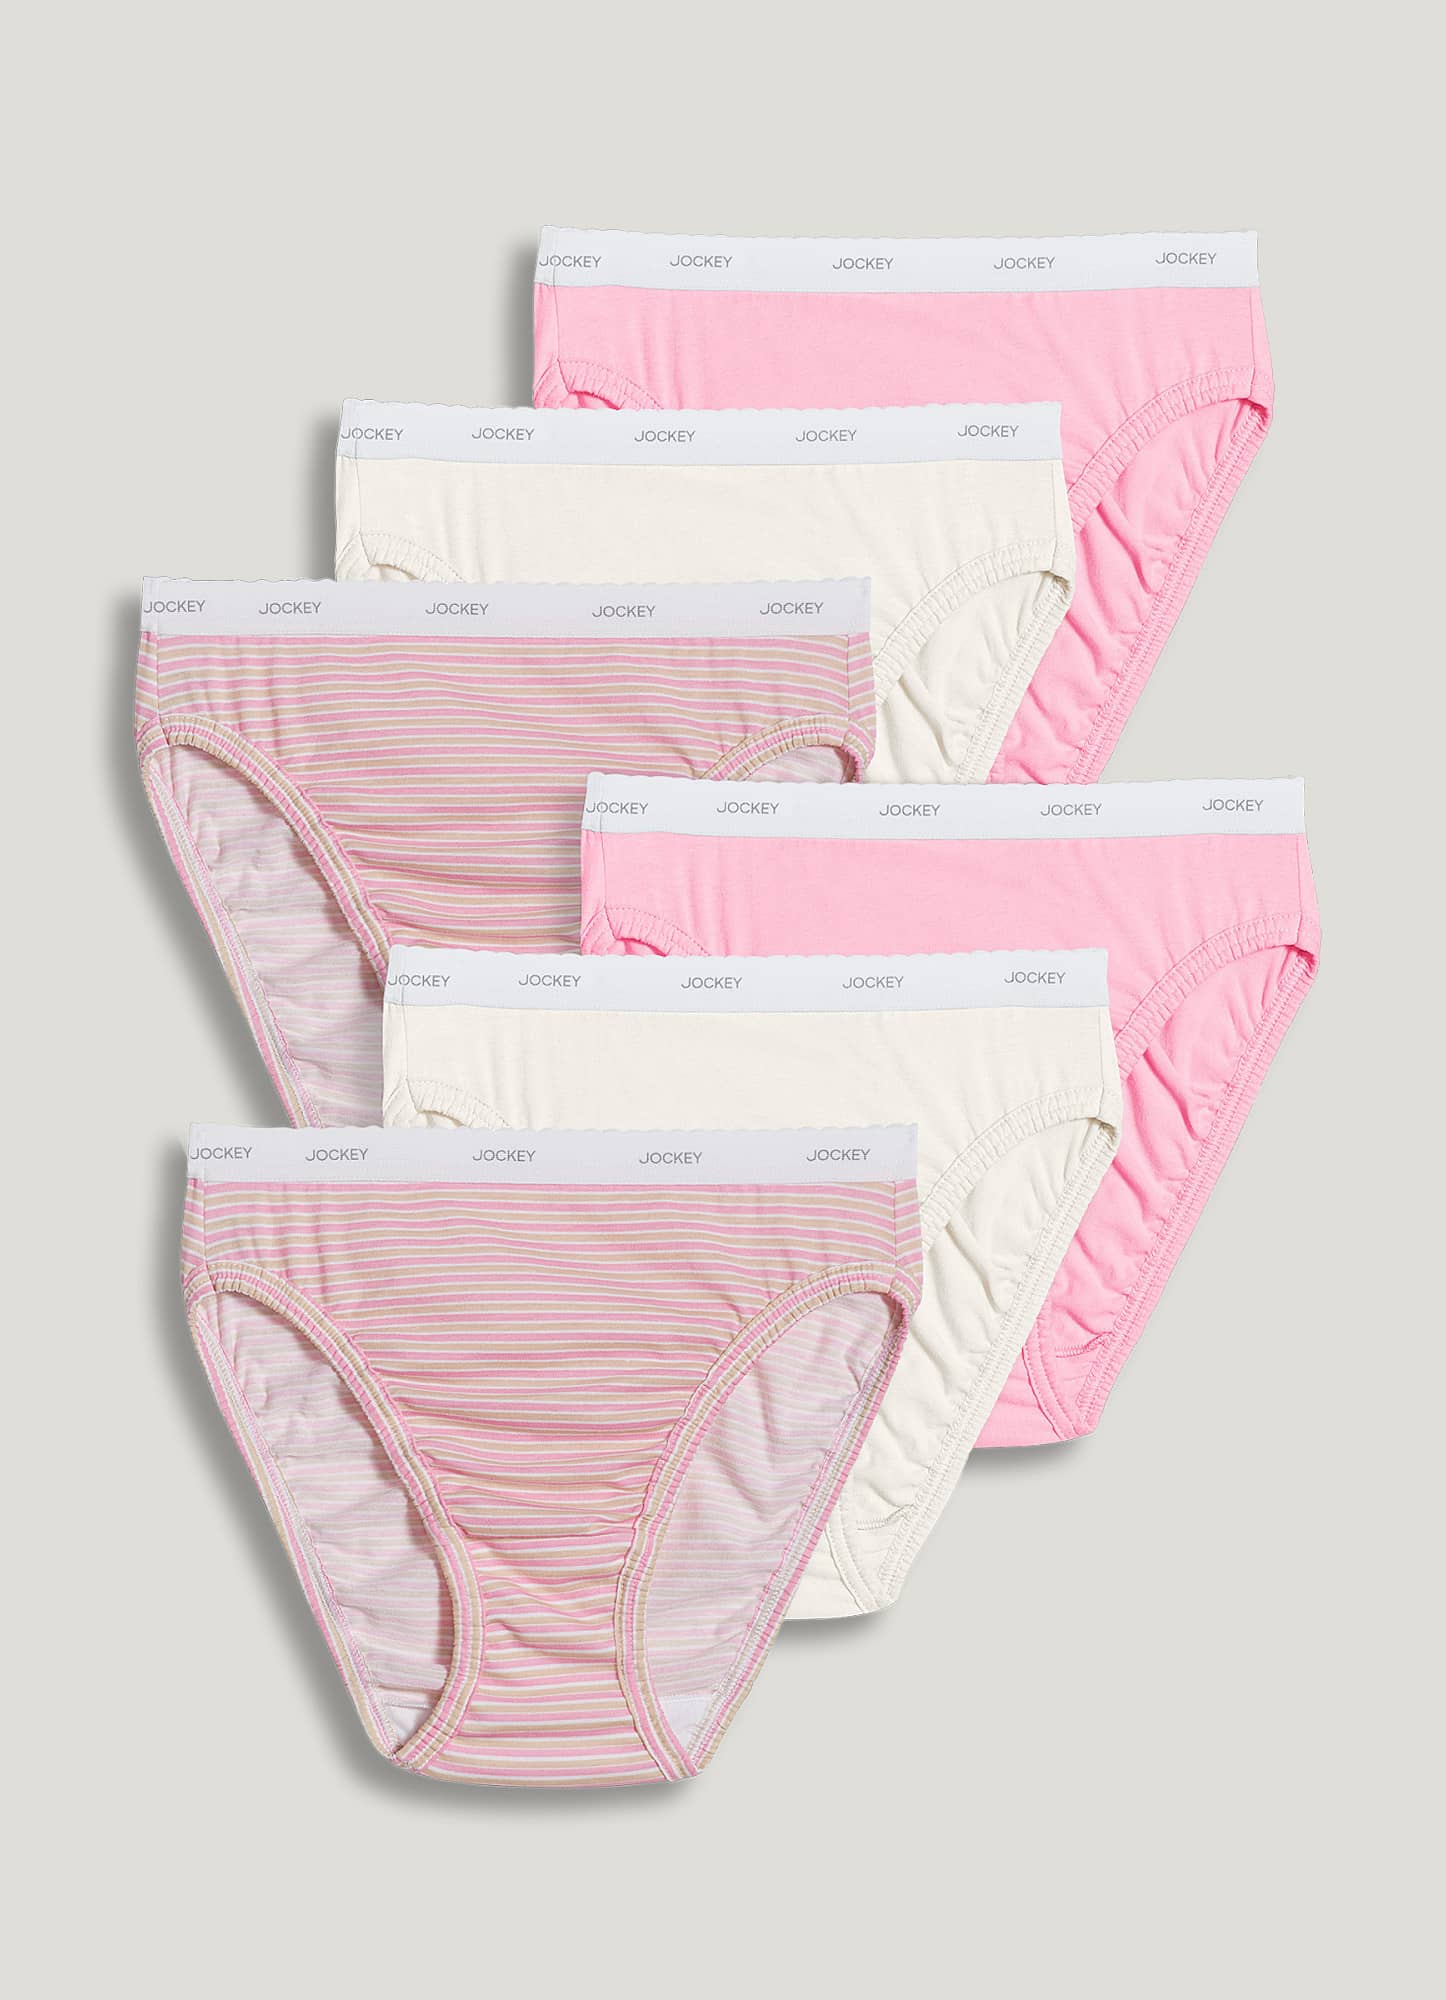 JOCKEY Panties Women's Underwear ~ Elance ~ Size 8 ~ French Cut ~ Style  1485